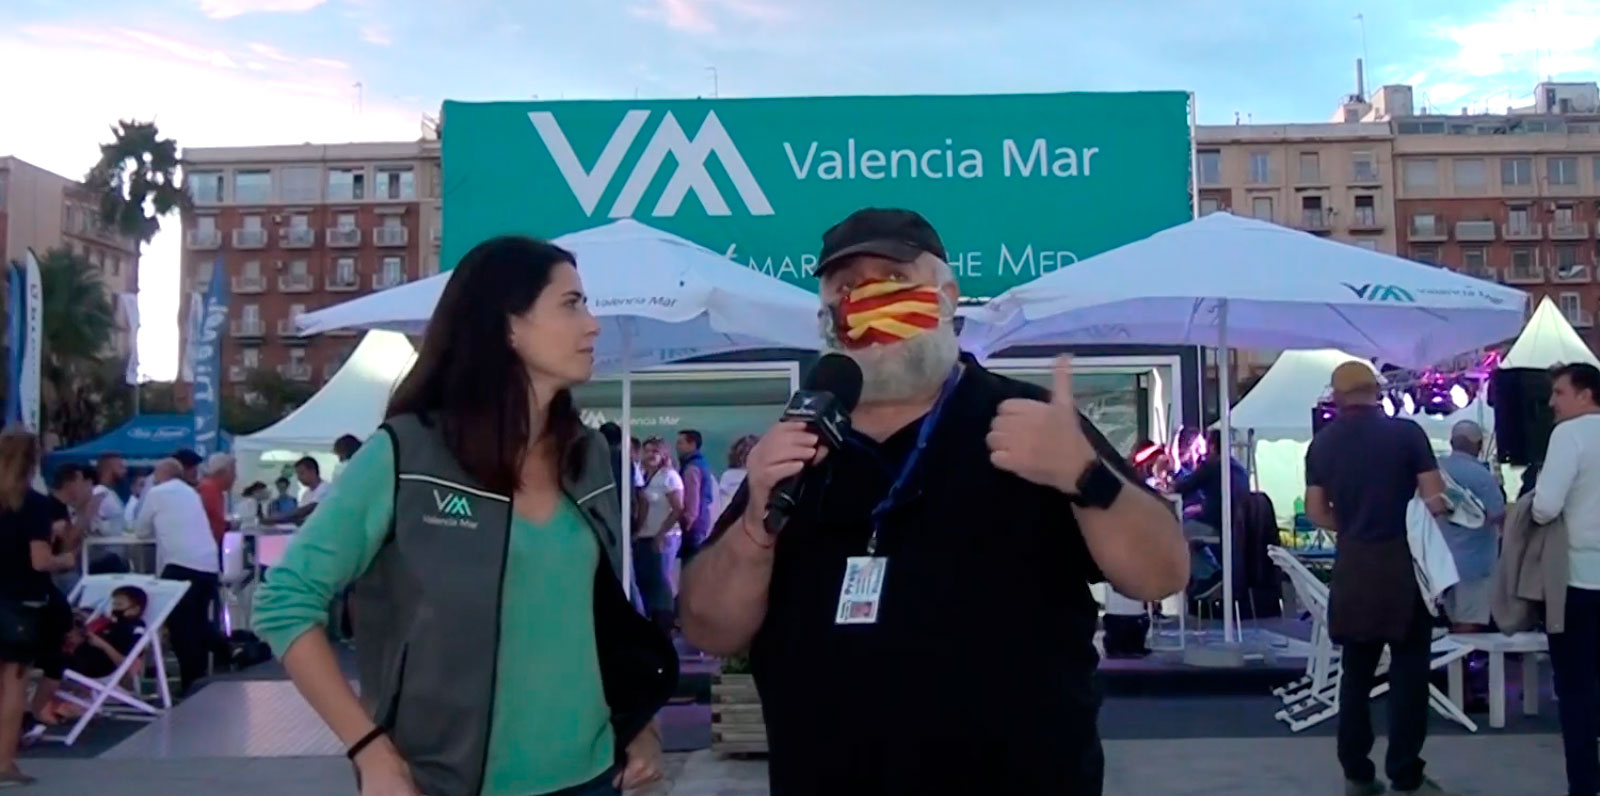 Valencia Boat Show 2021 - Ocio y Pesca TV - 31.10.21